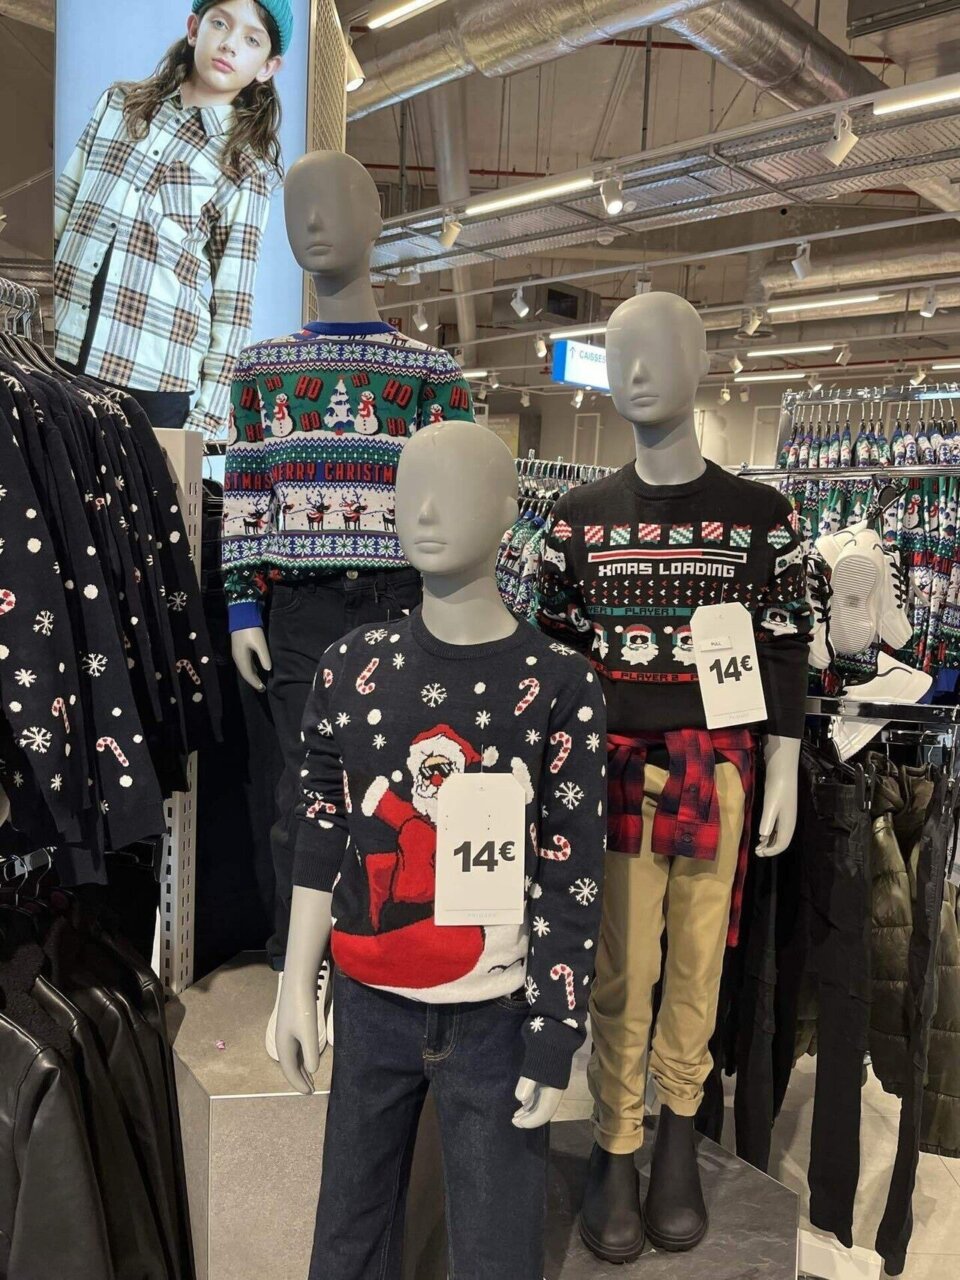 愛すべきフランス・デザイン「ダサ可愛セーターはフランスの新しいクリスマスアイテム！」